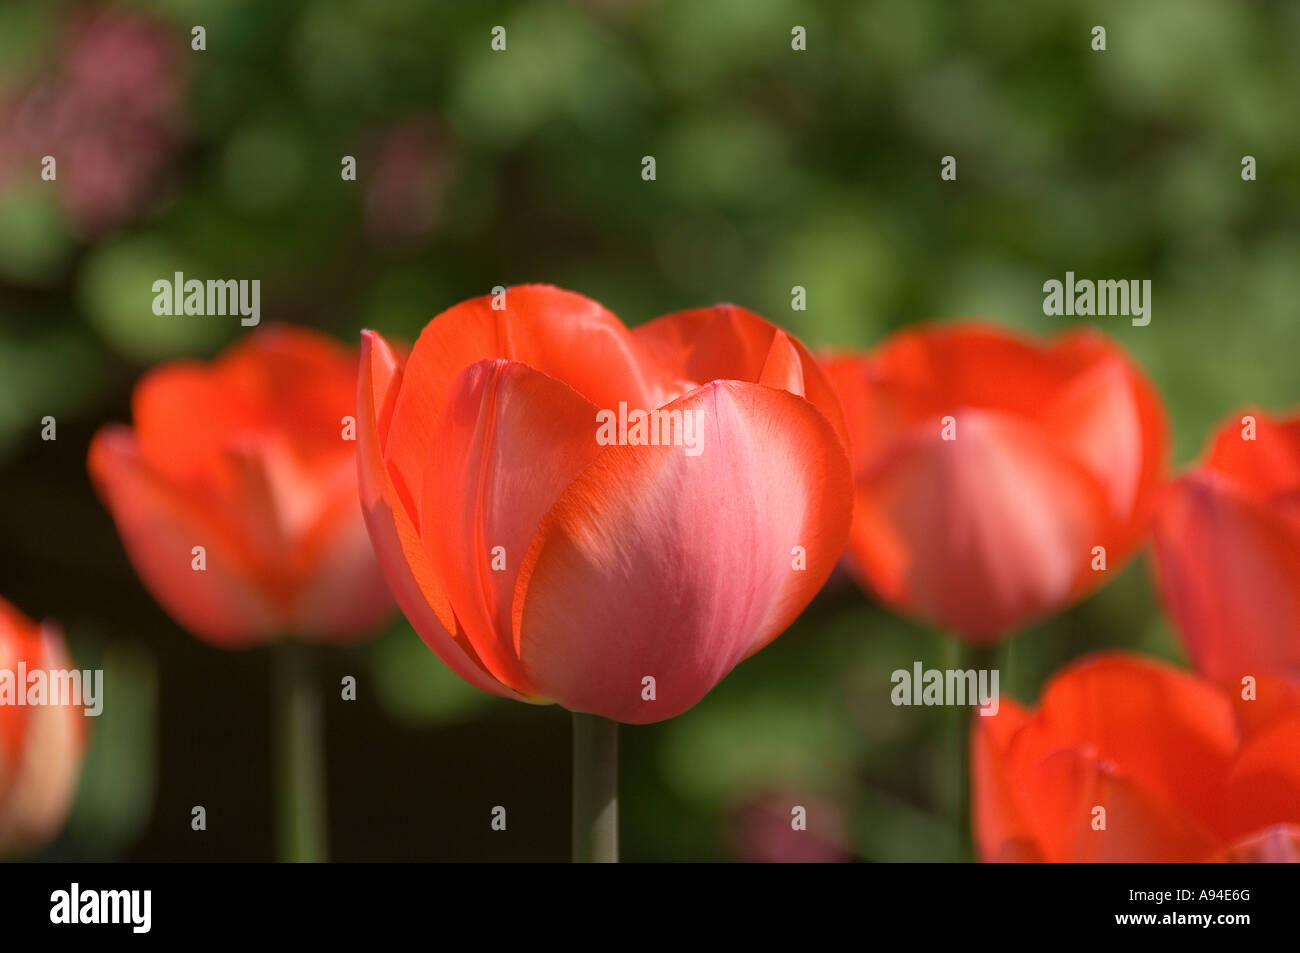 Gros plan de tulipes rouges tulipes fleurs fleur floraison au printemps Angleterre Royaume-Uni Grande-Bretagne Banque D'Images